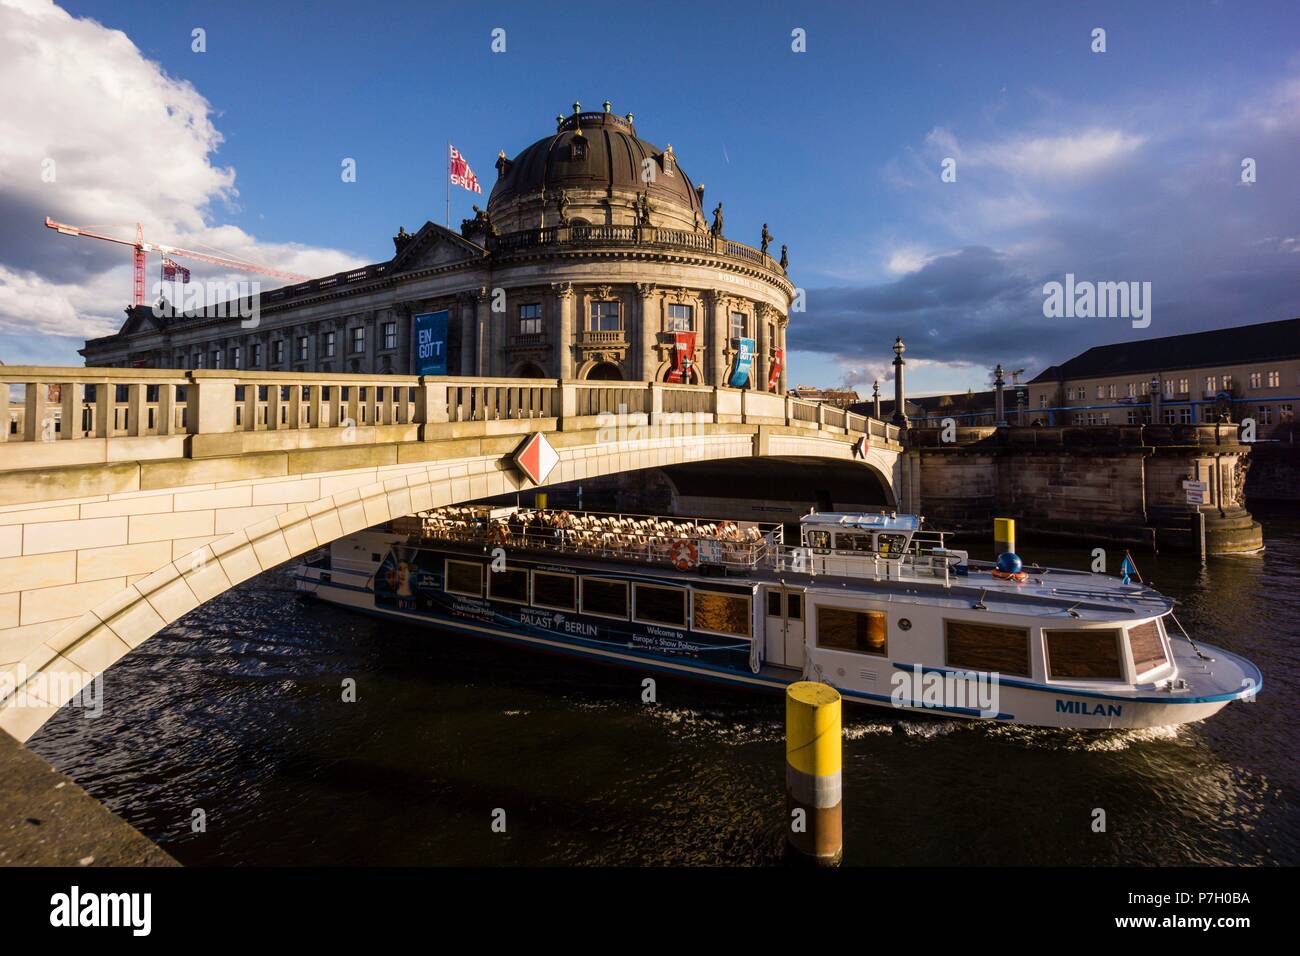 Museo Bode y puente sobre el rio Spree, isla de los museos, Berlin, Alemania, europe. Stock Photo